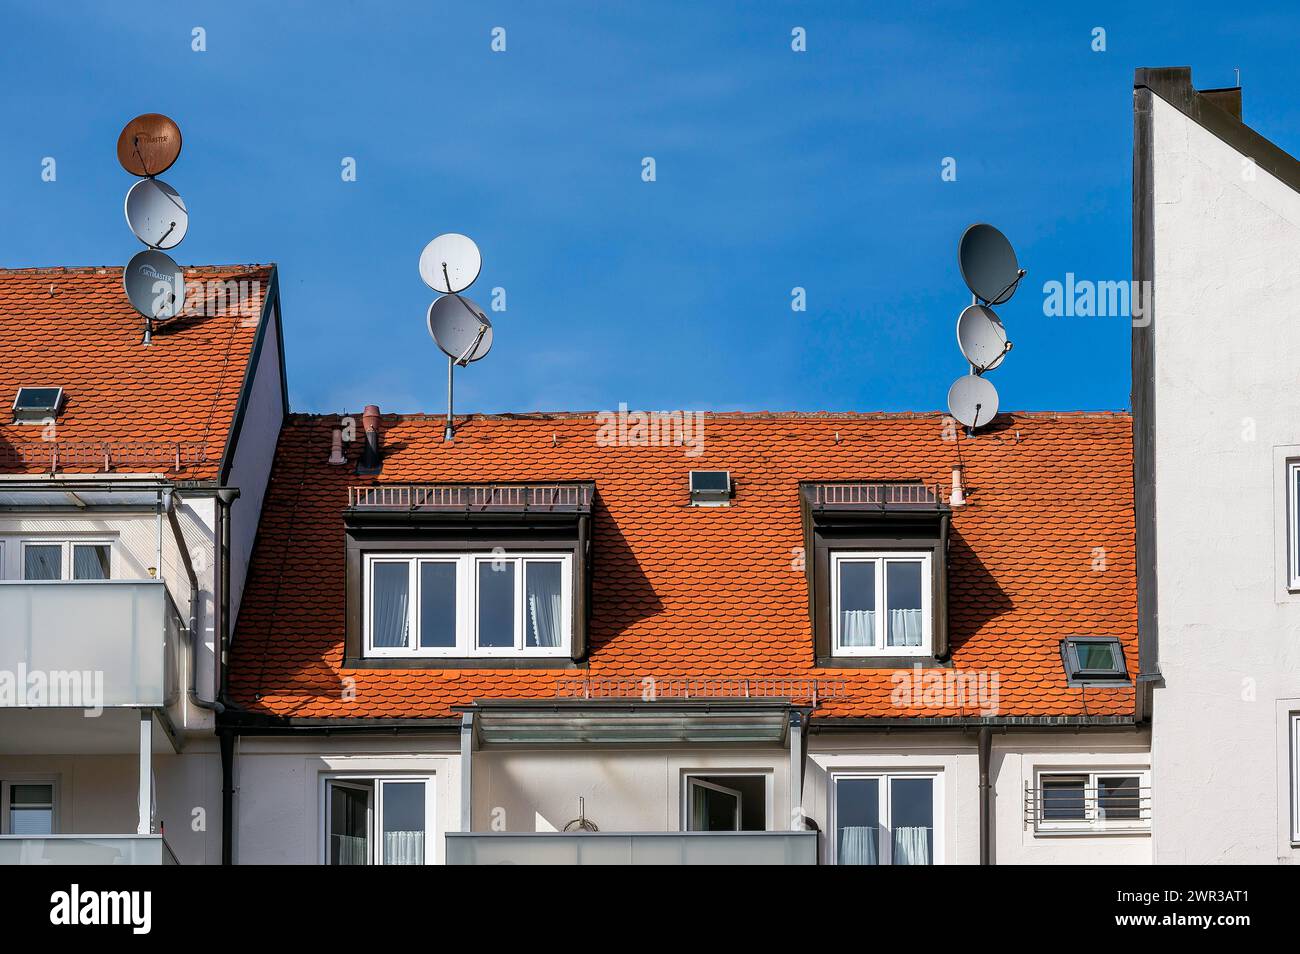 Toits en tuiles rouges, lucarnes et antennes paraboliques, Kempten, Allgaeu, Bavière, Allemagne Banque D'Images